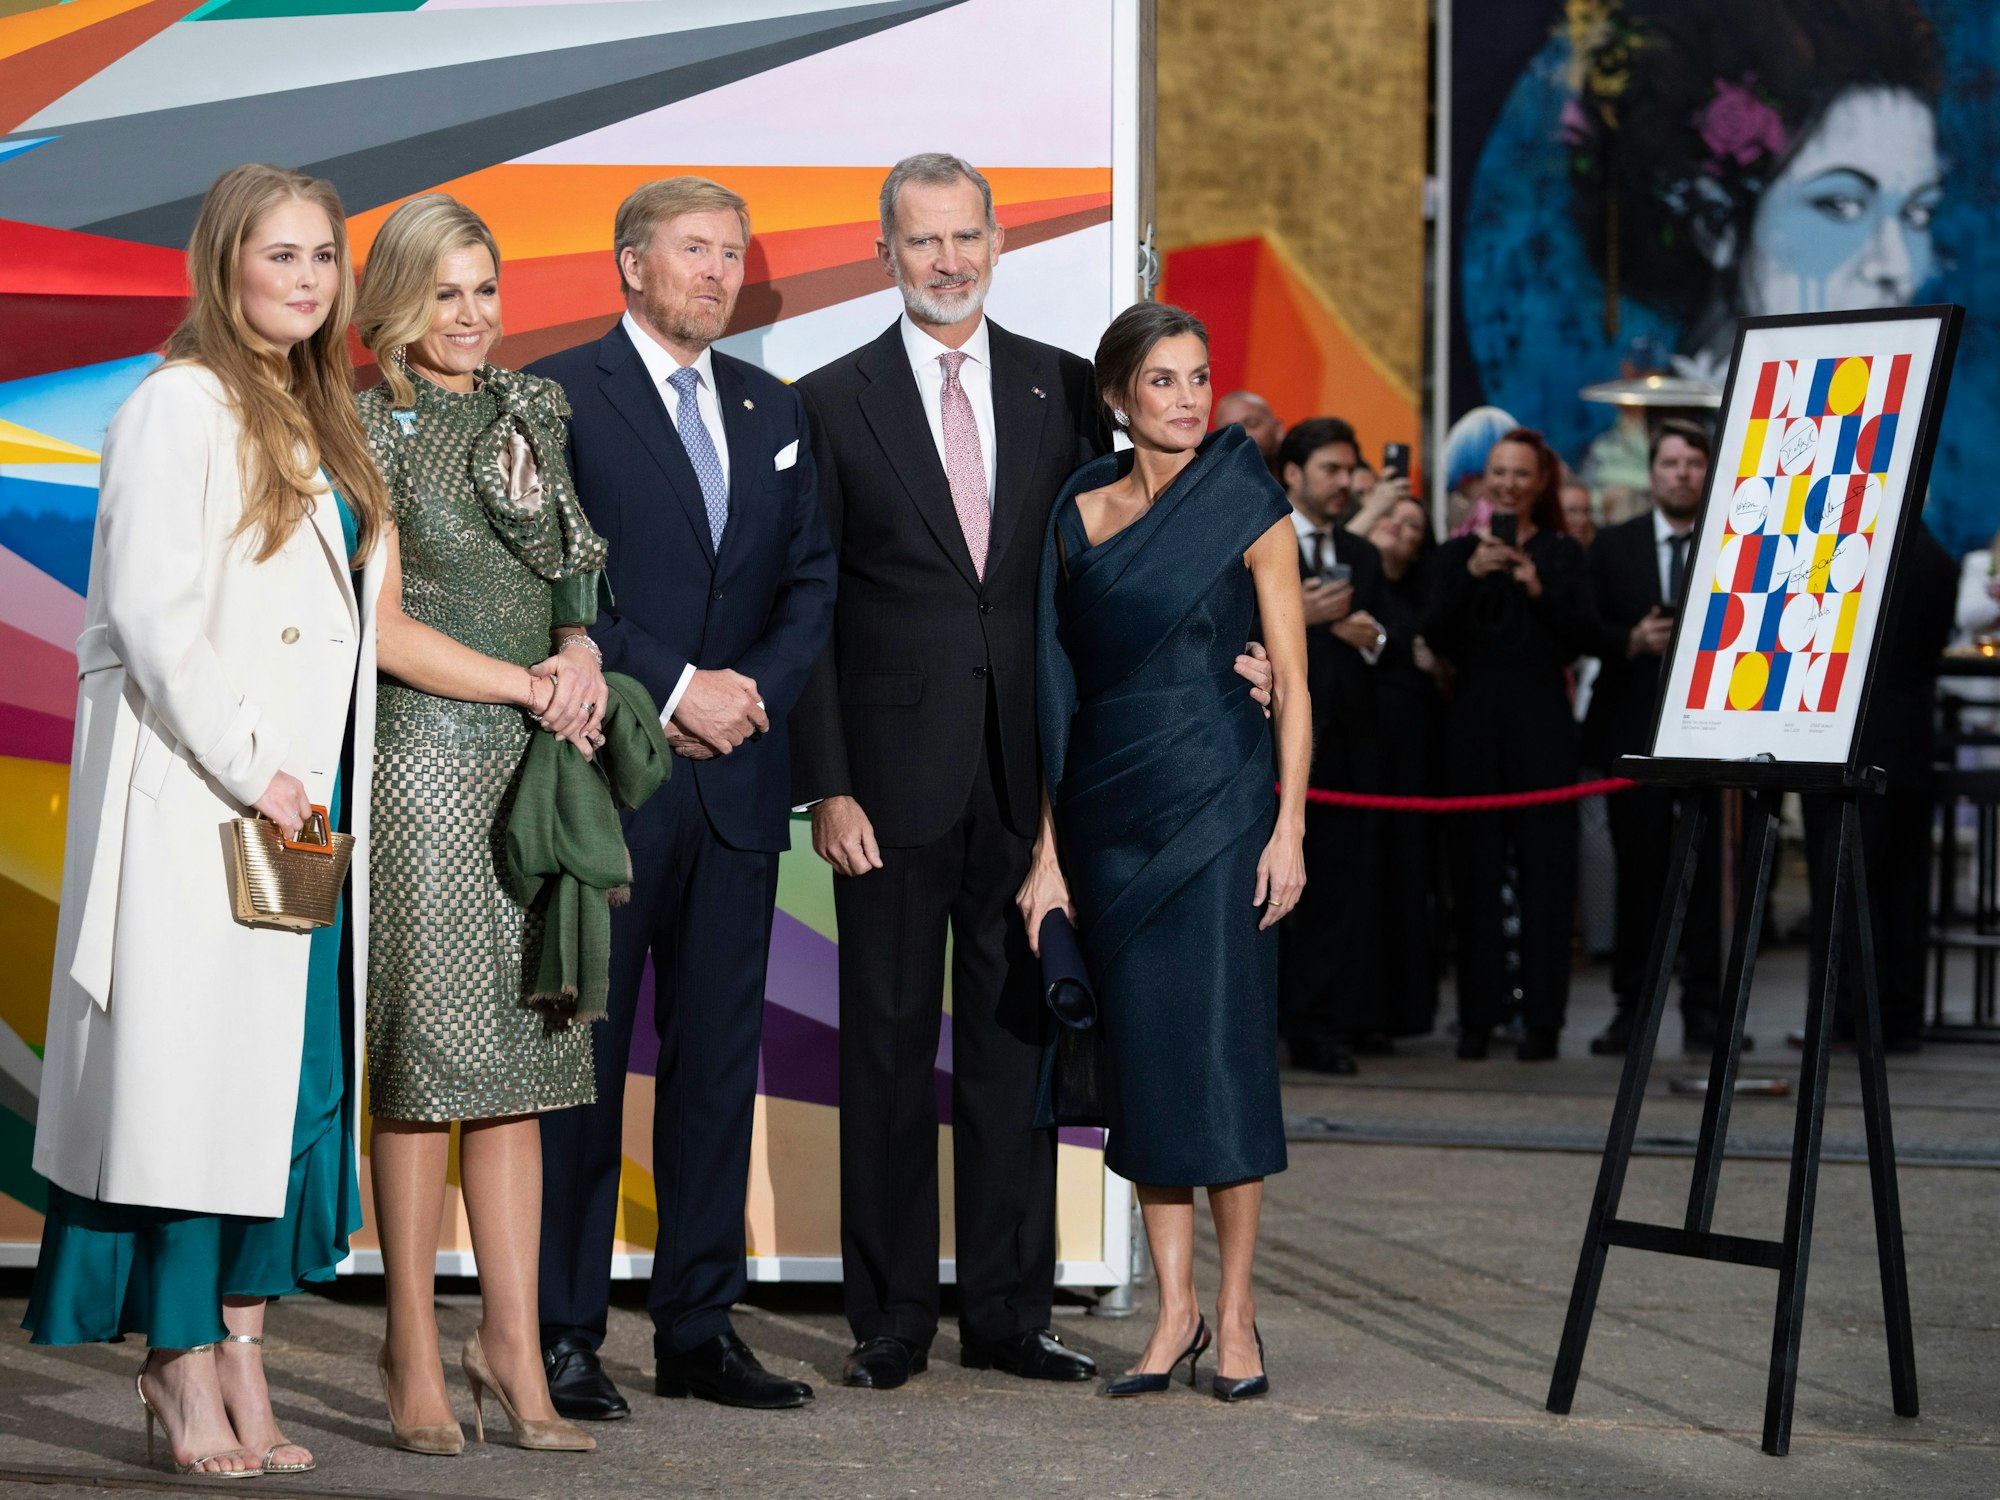 Königin Letizia, König Felipe VI., König Willem-Alexander, Königin Maxima und Kronprinzessin Amalia während des Besuchs im STRAAT-Museum in Amsterdam.